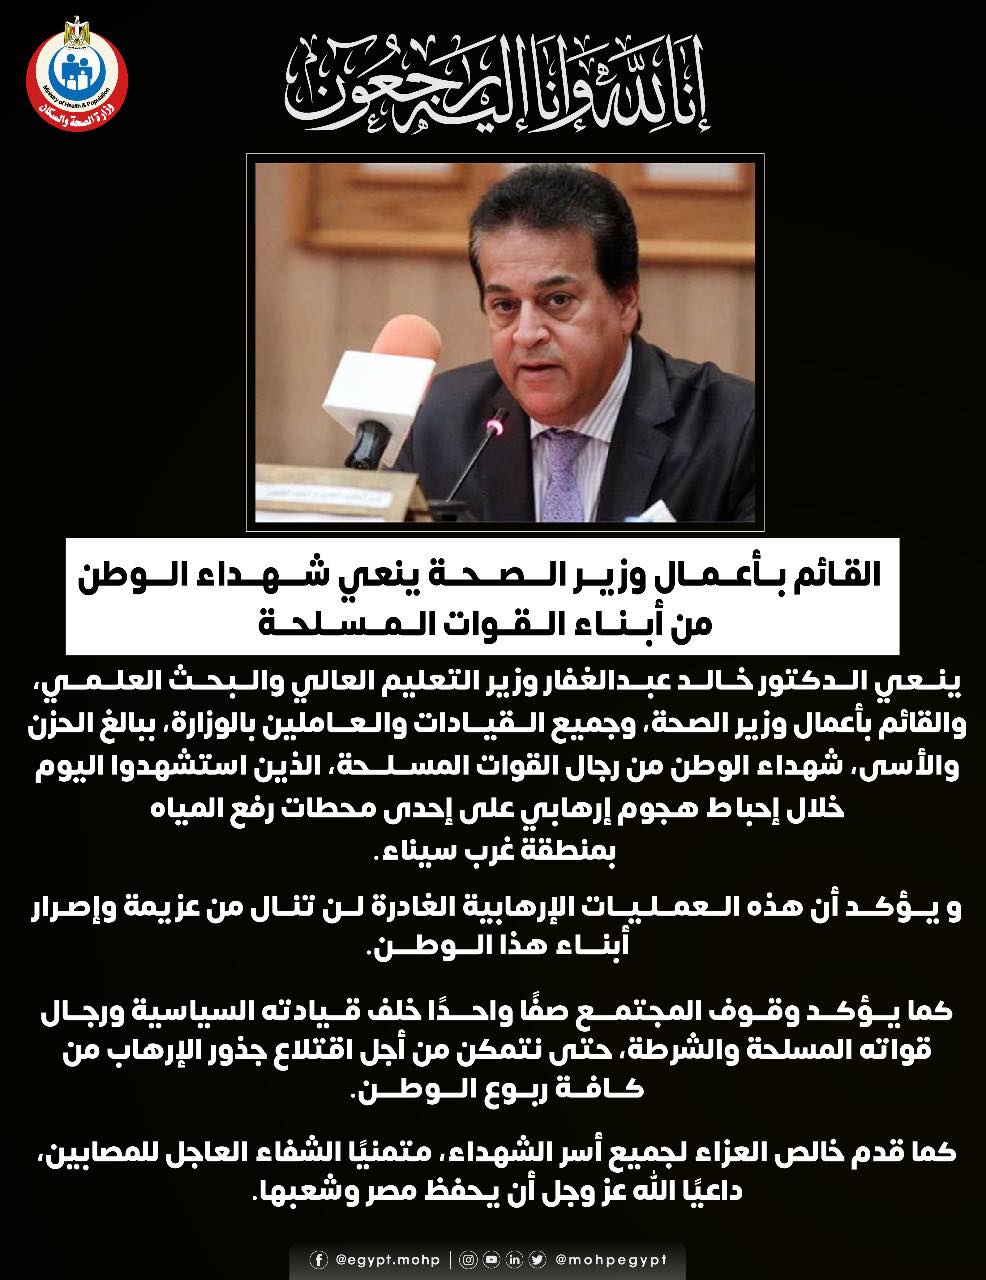 وزير الصحة يؤكد على وقوف المجتمع صفًا واحدًا خلف قيادته السياسية لاقتلاع جذور الإرهاب 1